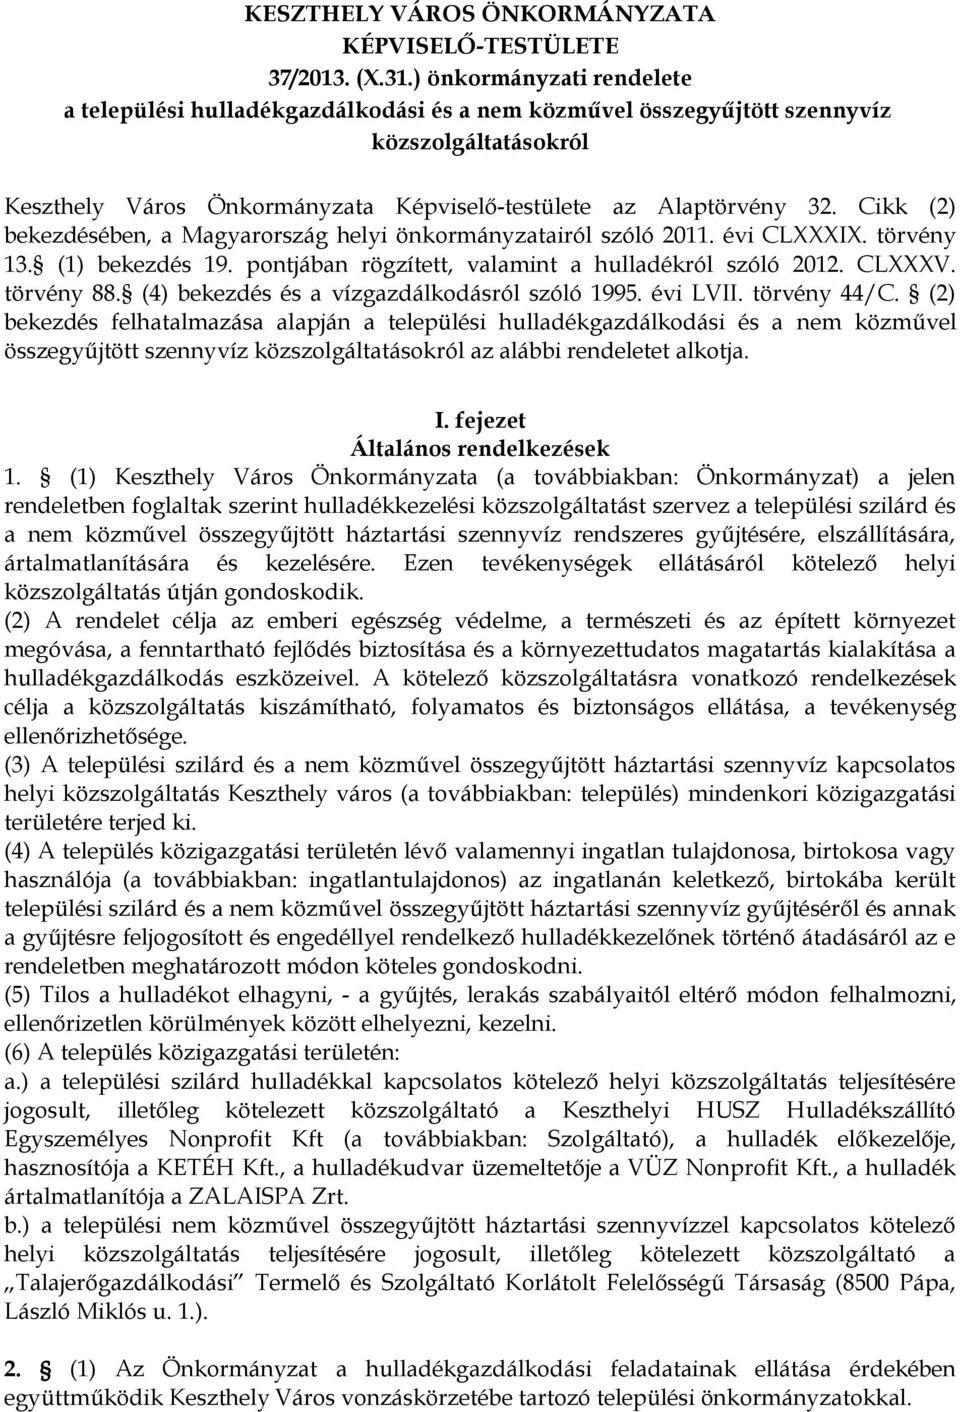 Cikk (2) bekezdésében, a Magyarország helyi önkormányzatairól szóló 2011. évi CLXXXIX. törvény 13. (1) bekezdés 19. pontjában rögzített, valamint a hulladékról szóló 2012. CLXXXV. törvény 88.